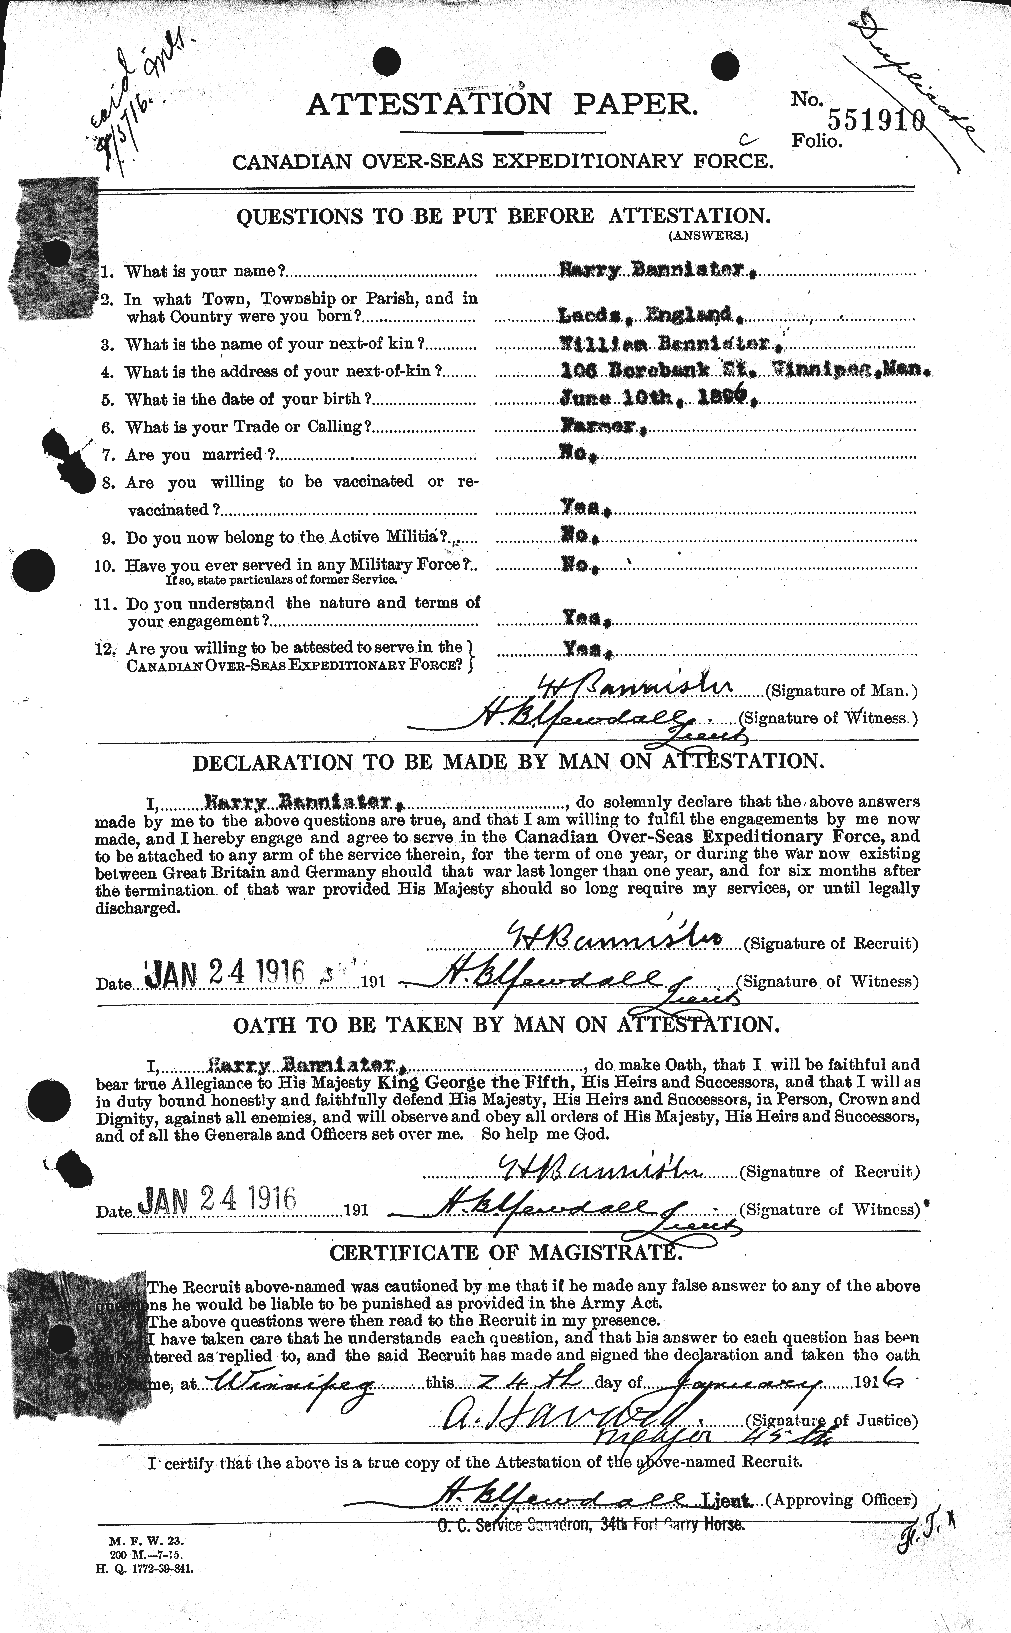 Dossiers du Personnel de la Première Guerre mondiale - CEC 224789a